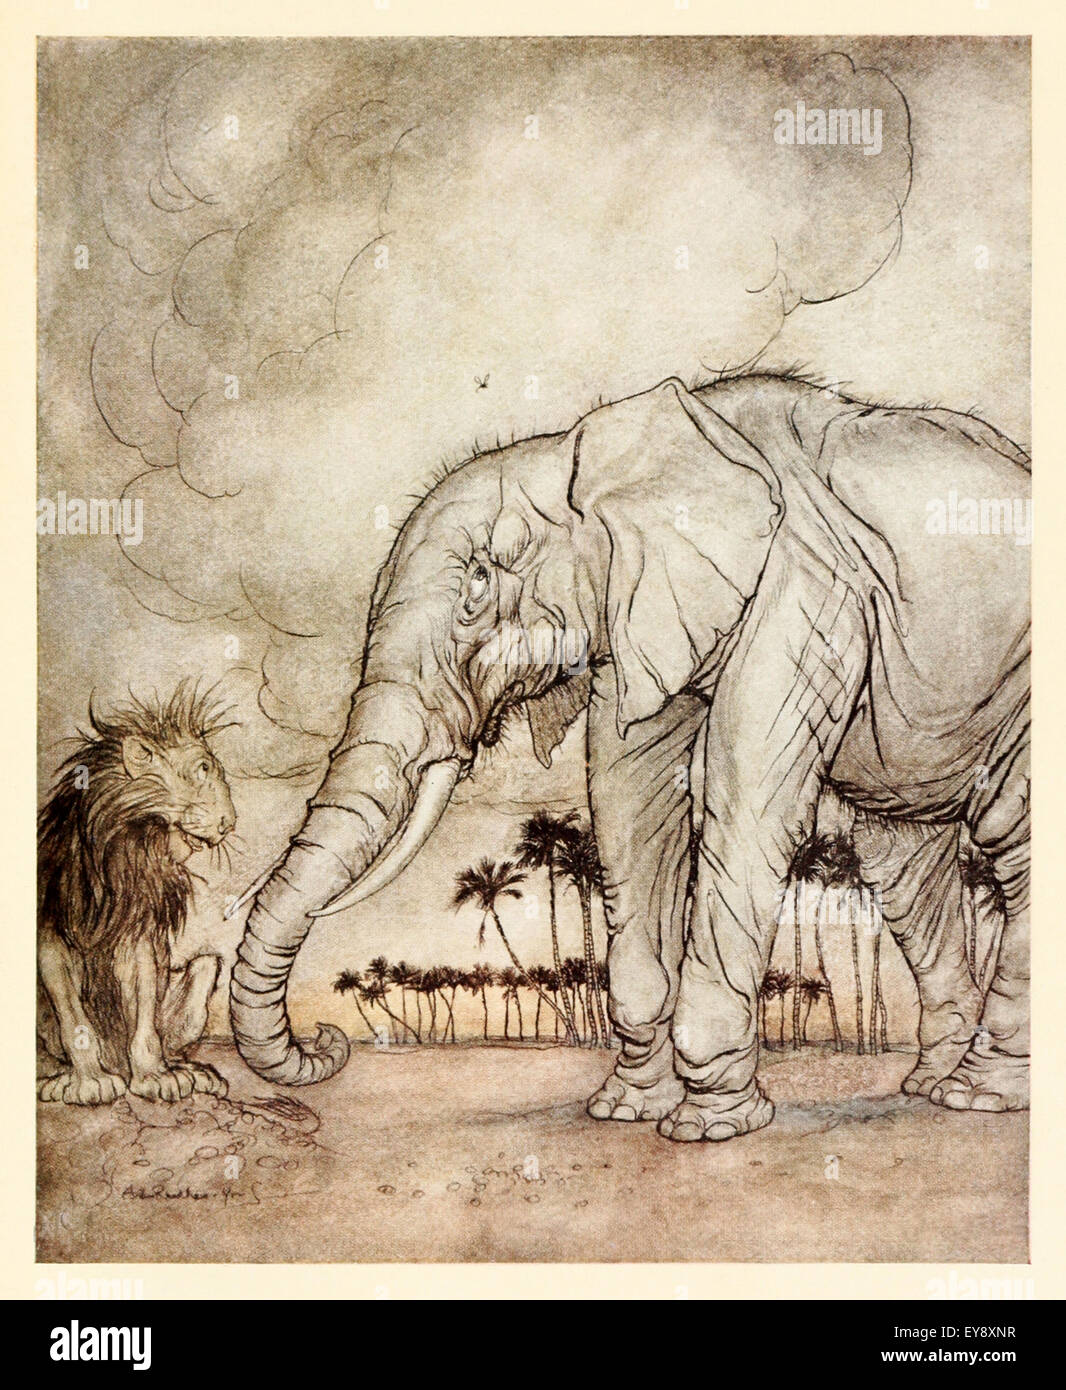 "Il Leone, Giove e il leone" favola di Esopo (circa 600BC). Un Lion ha lamentato il suo stato di Giove che ha rifiutato di aiutare. Il leone ha poi visto un elefante che è stato disturbato da un moscerino. Il Leone il pensiero migliore del suo stato. Morale: c'è sempre qualcuno peggio di voi. Illustrazione di Arthur Rackham (1867-1939). Vedere la descrizione per maggiori informazioni. Foto Stock